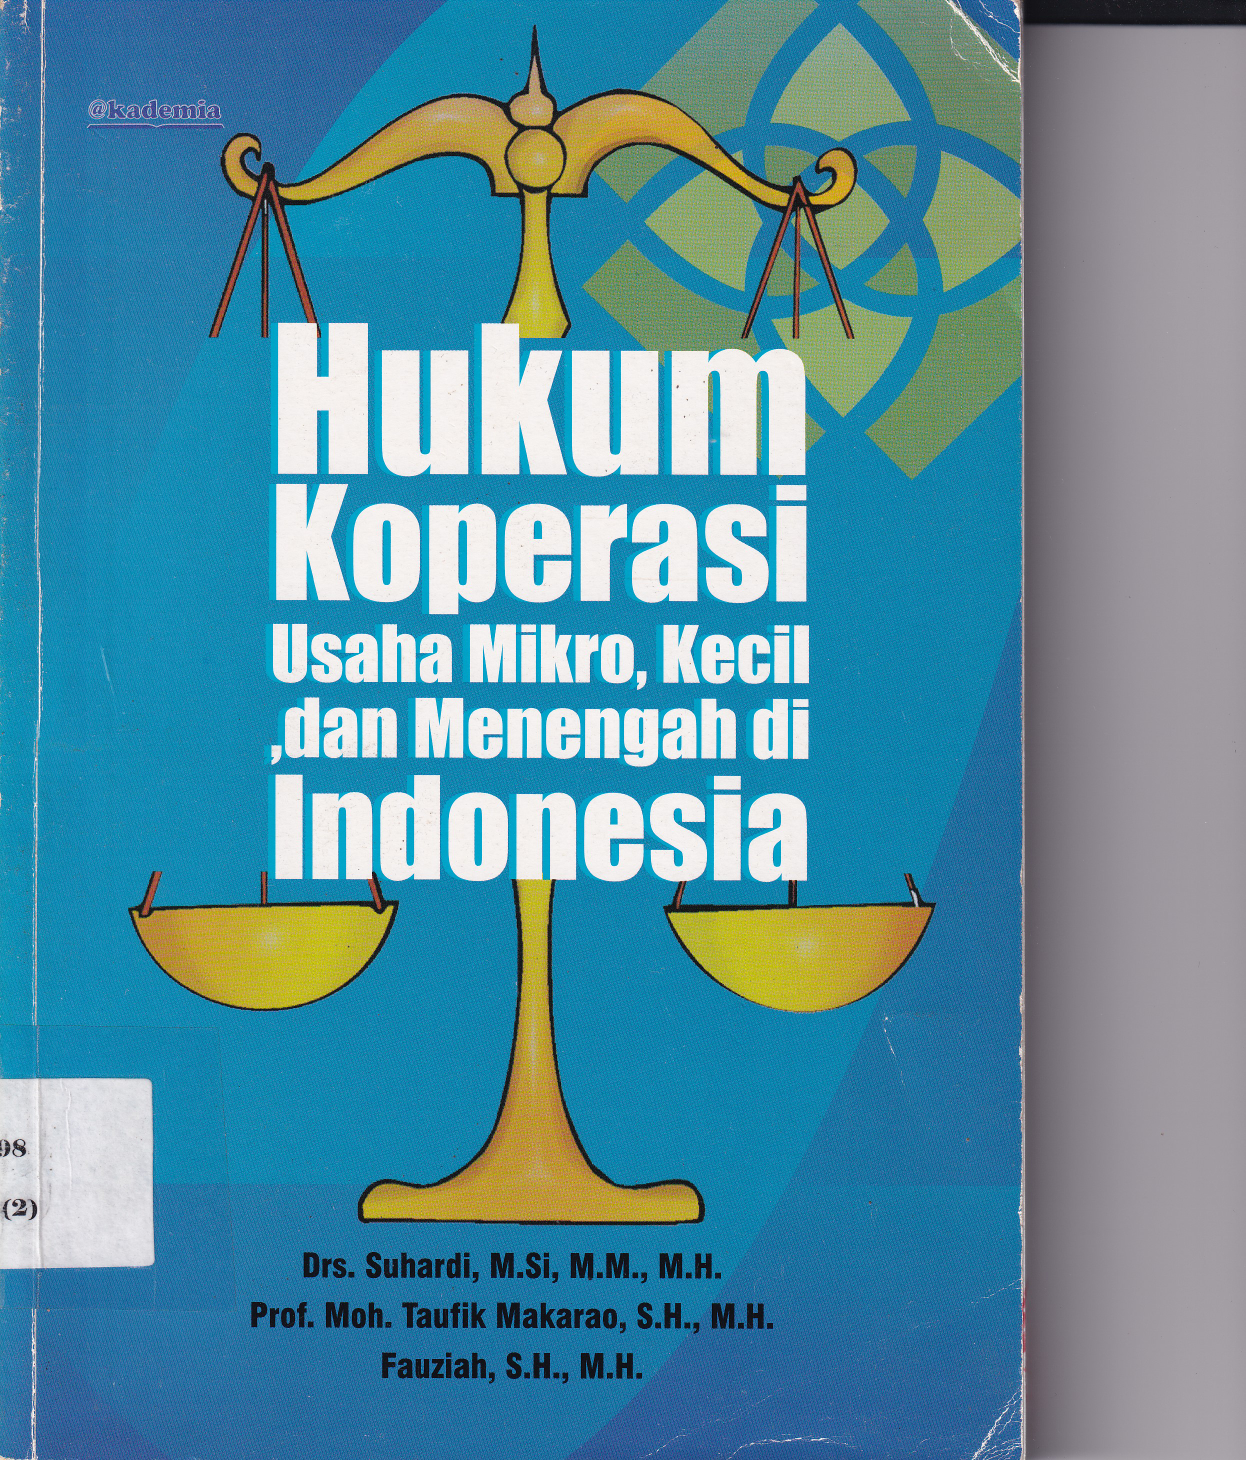 Hukum Koperasi Usaha Mikro, Kecil, dan Menengah di Indonesia